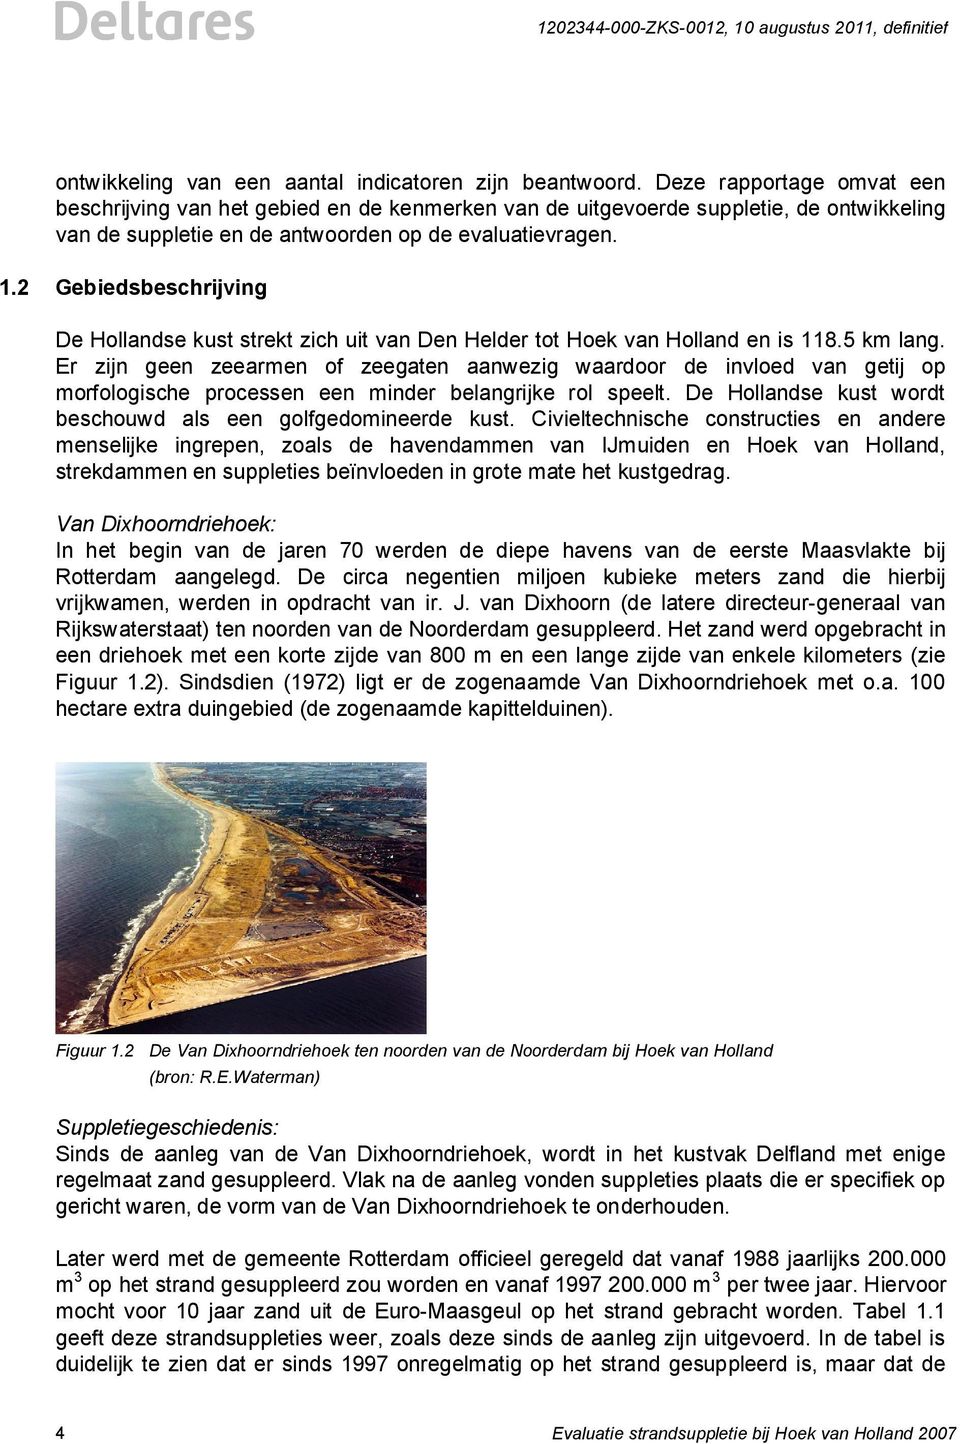 2 Gebiedsbeschrijving De Hollandse kust strekt zich uit van Den Helder tot Hoek van Holland en is 118.5 km lang.